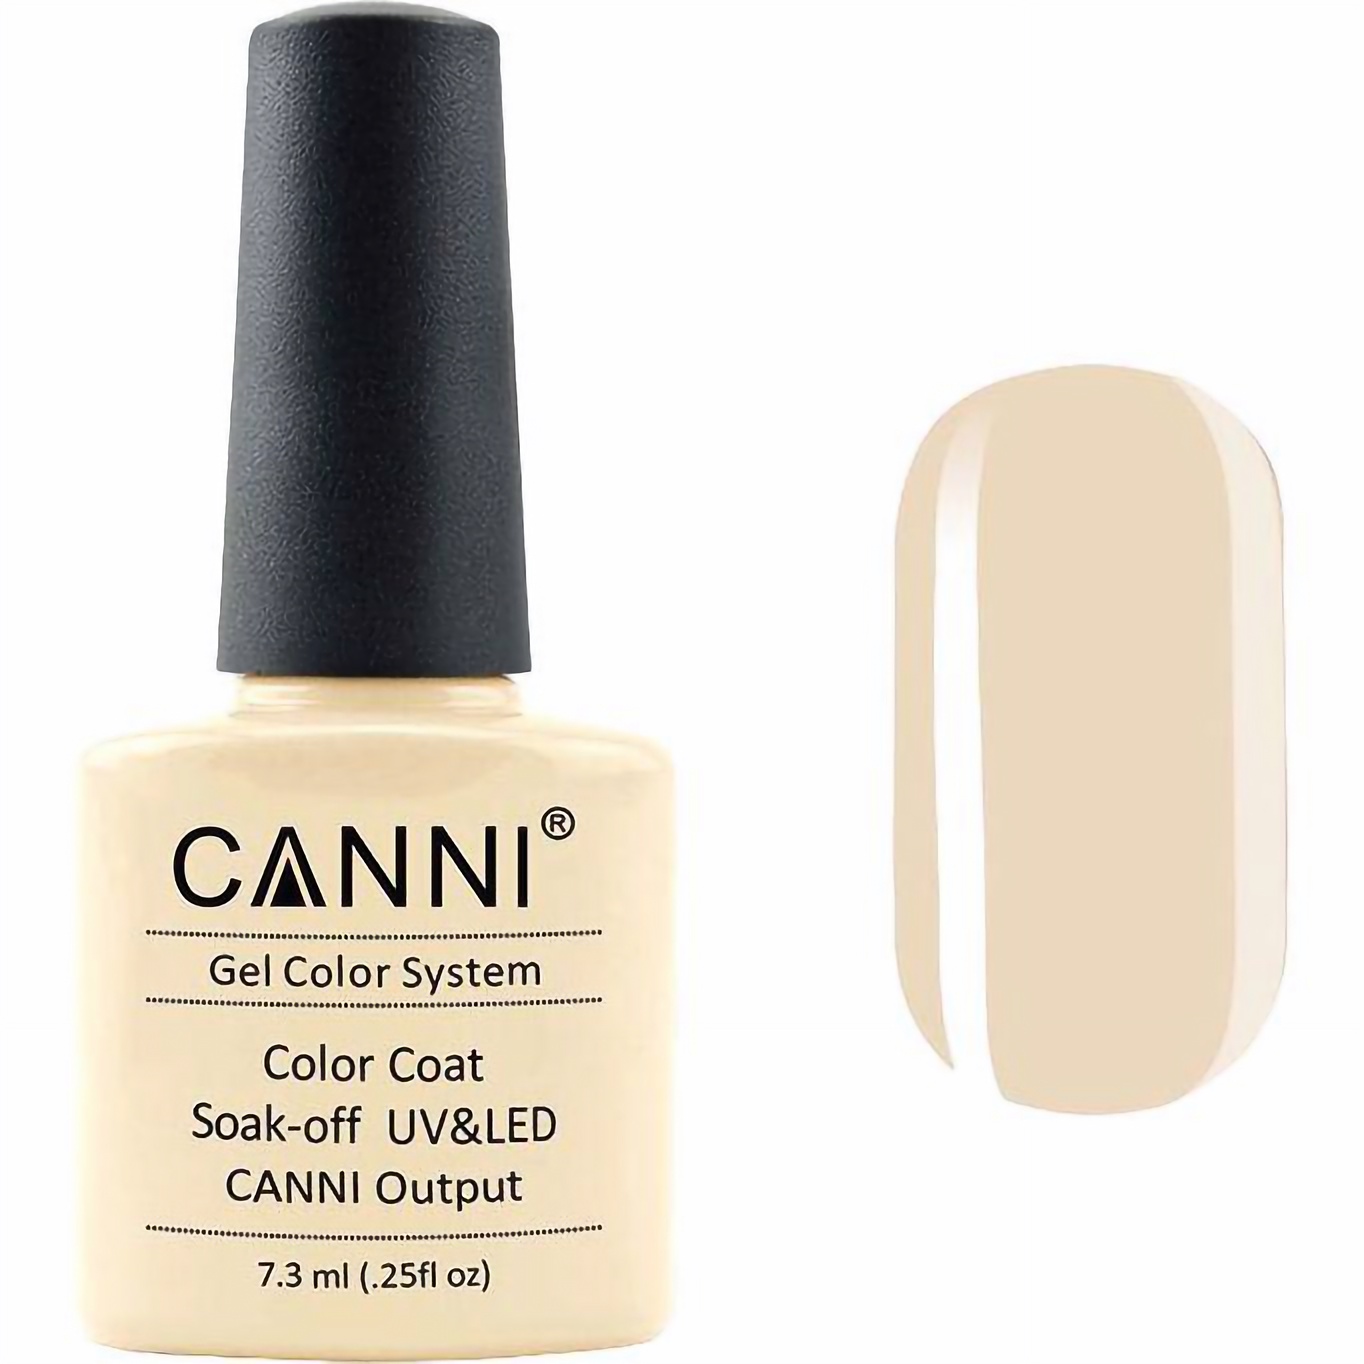 Гель-лак Canni Color Coat Soak-off UV&LED 173 темно-кремовый 7.3 мл - фото 1